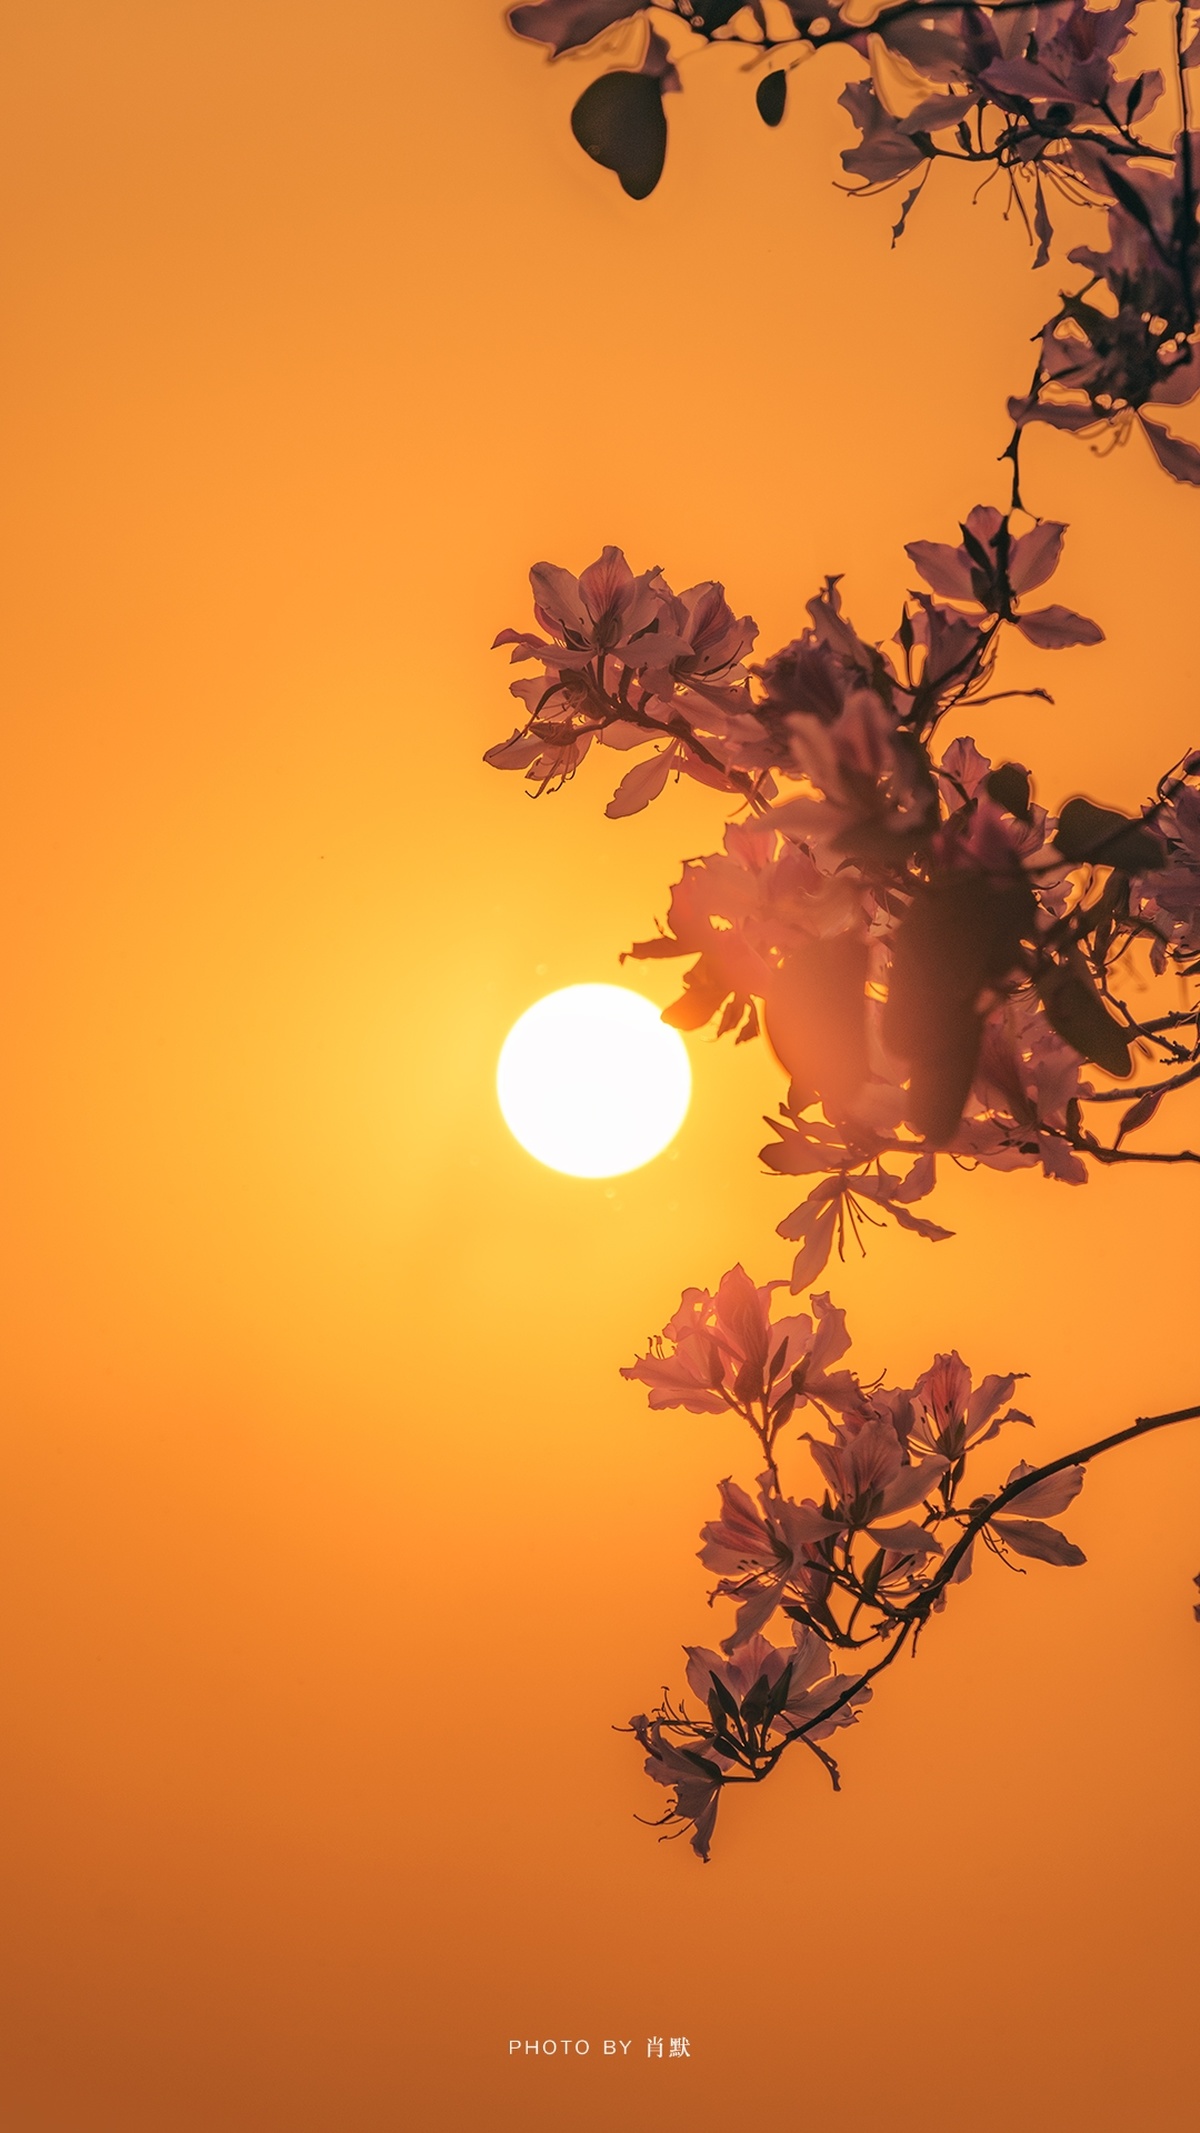 一棵开粉花的树 背景是落日